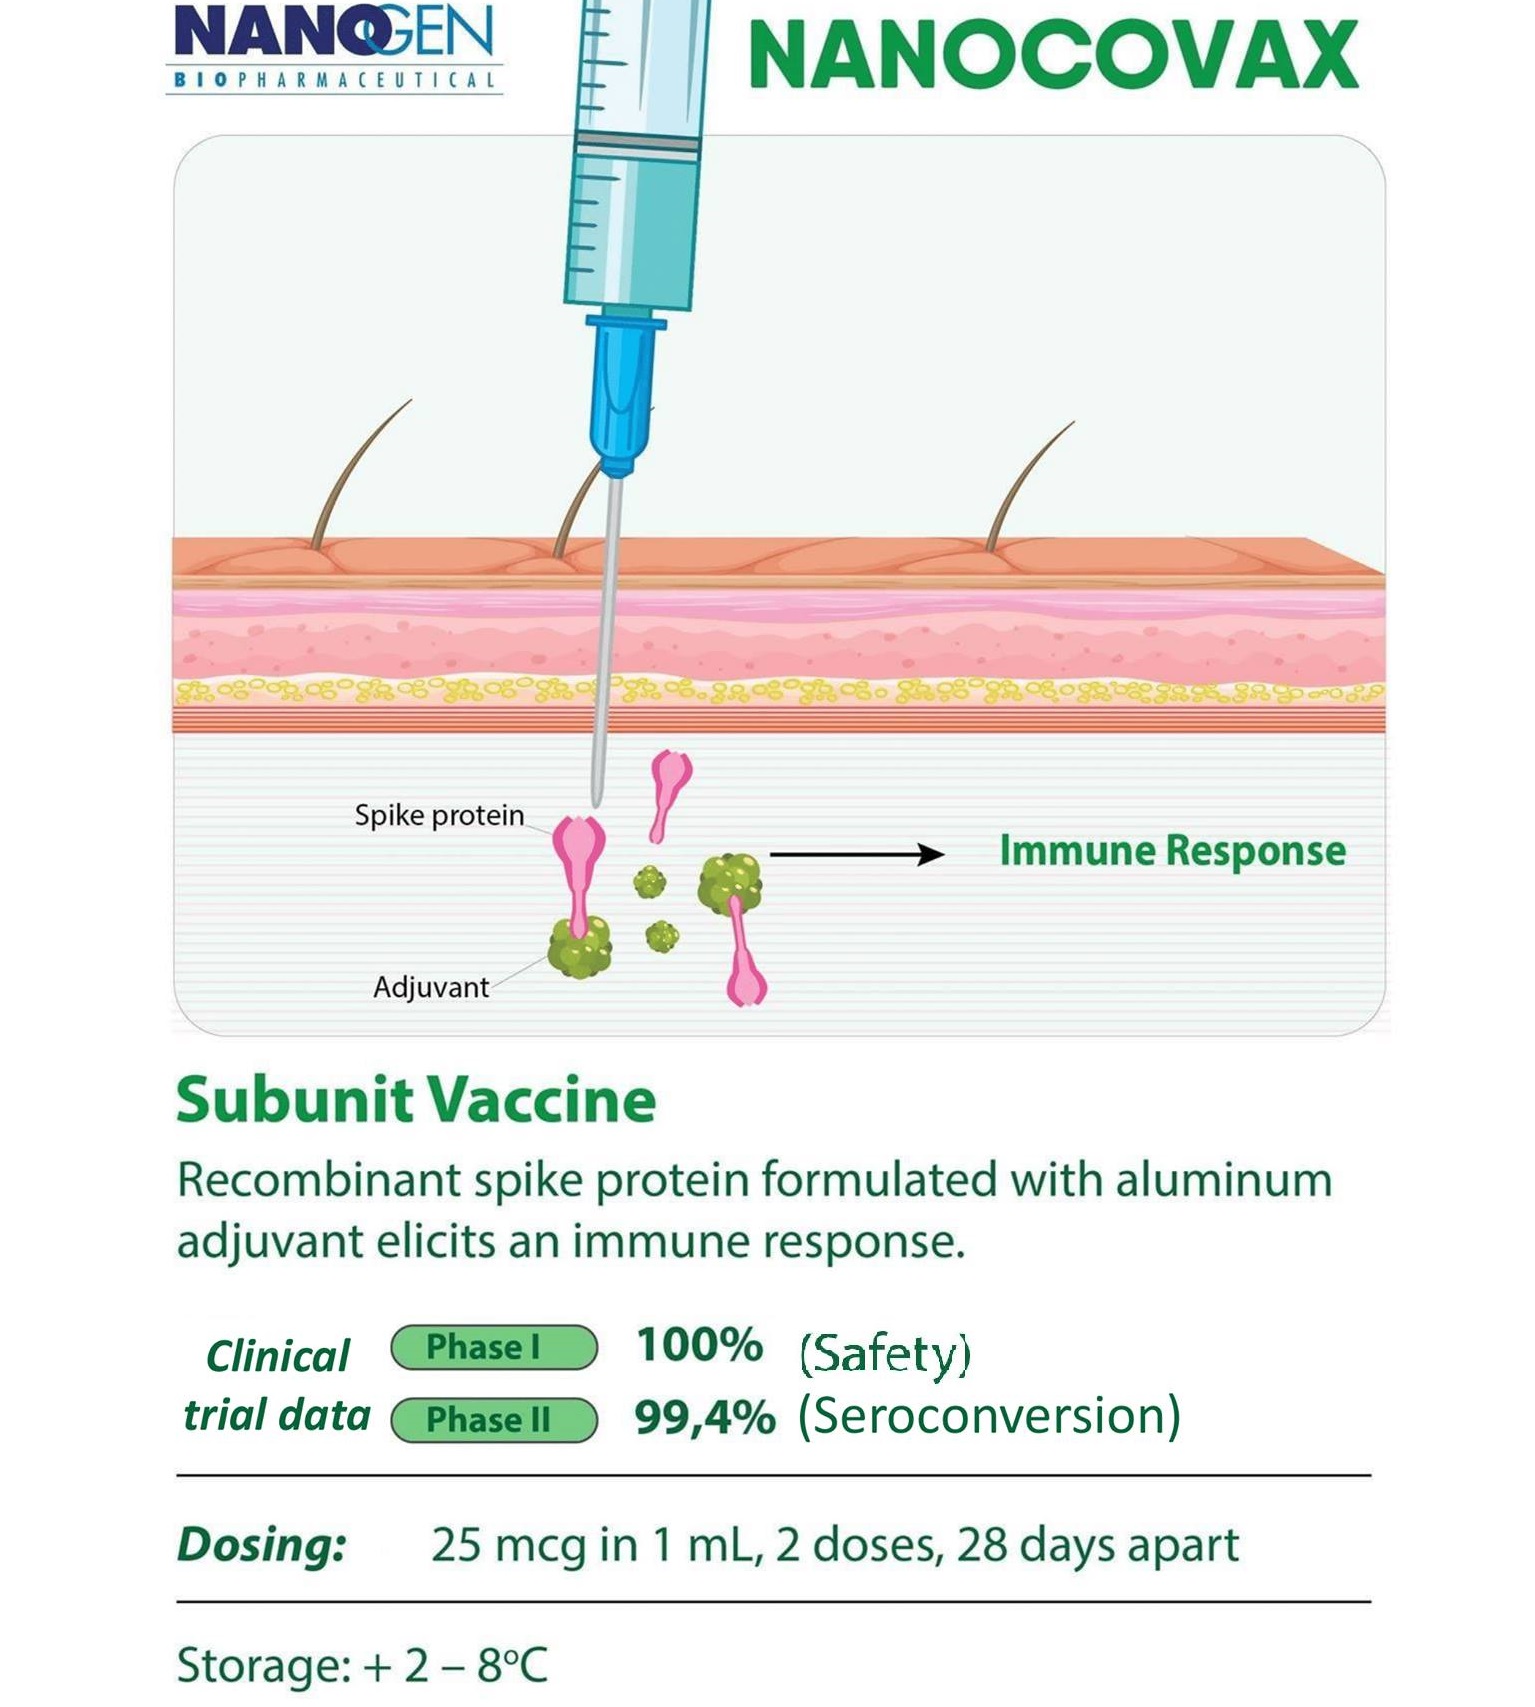 Nanocovax là vaccine tiểu đơn vị chứa kháng nguyên gai (S) SARS-CoV-2 tái tổ hợp, bản chất là protein S, có vai trò kích thích sinh miễn dịch kháng virus SARS-CoV-2.